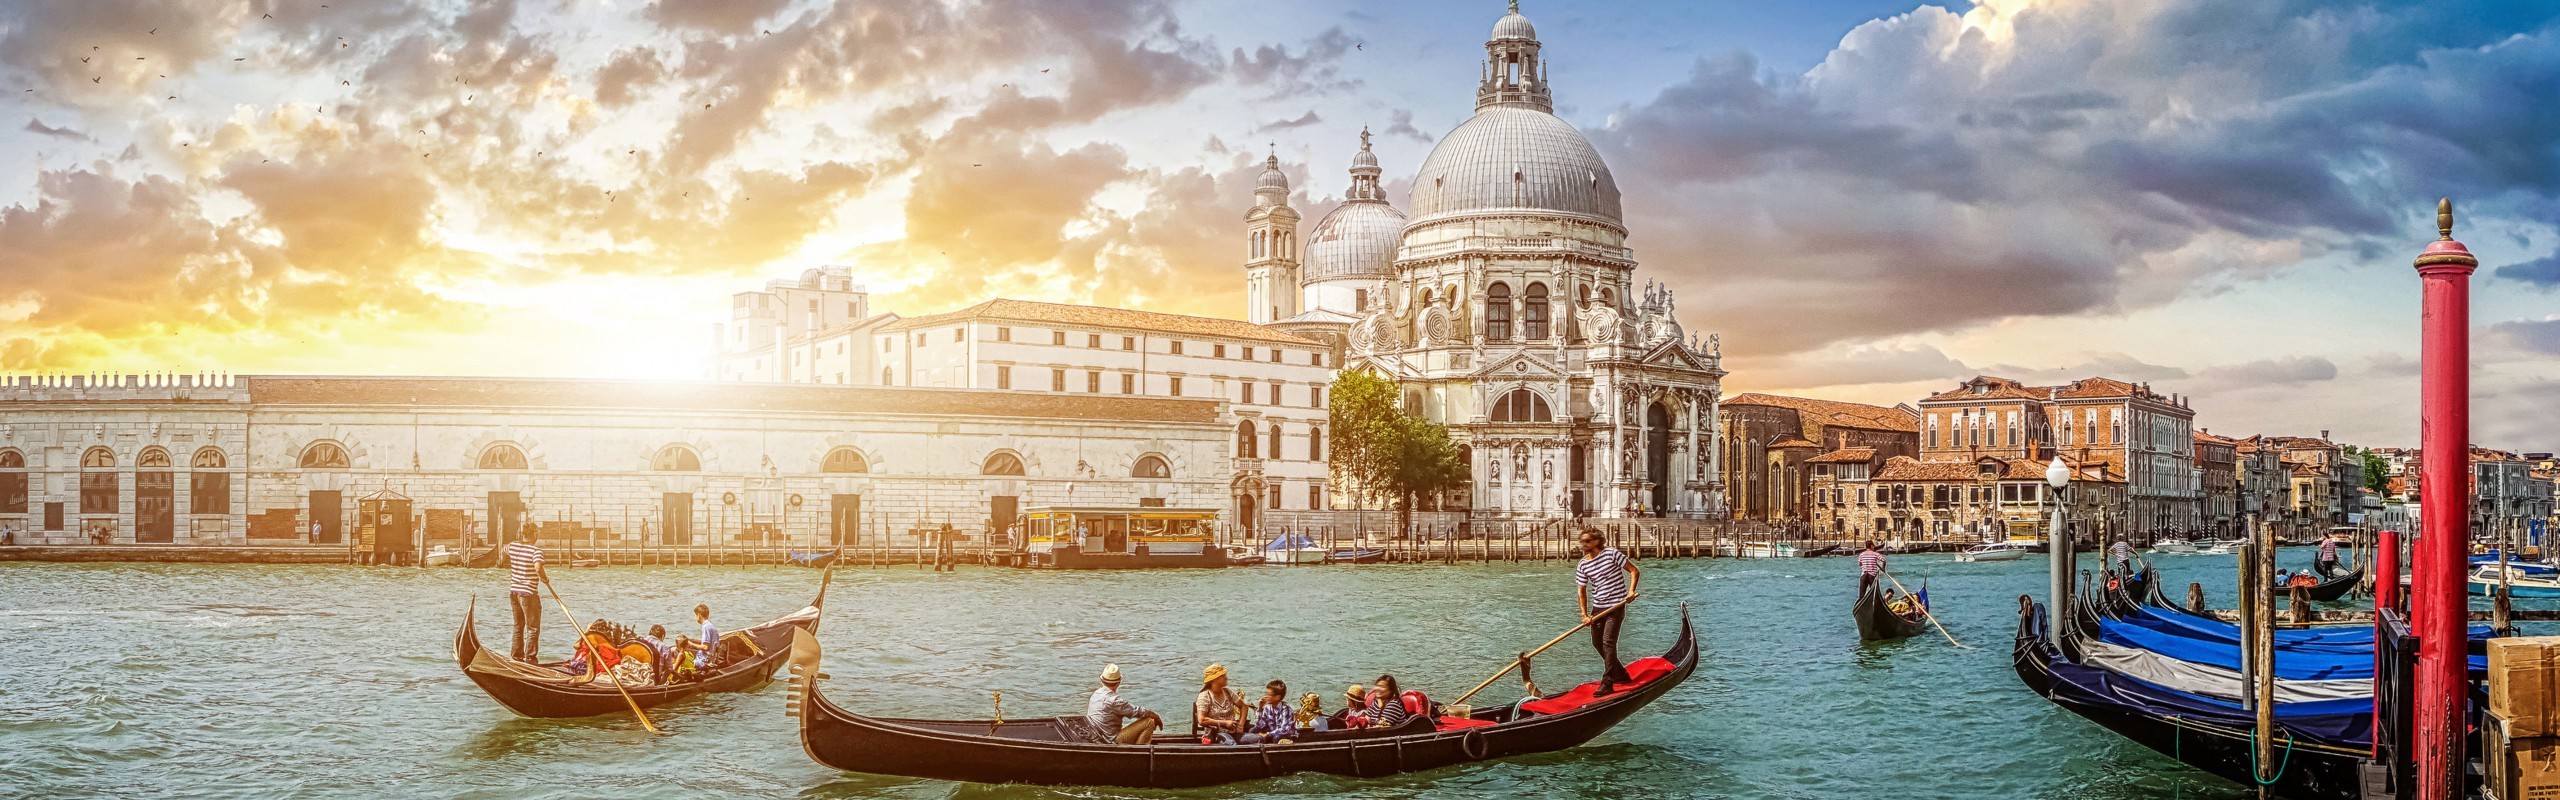 Venice by Private Gondola - Gondola Tour in Venice – Select Italy